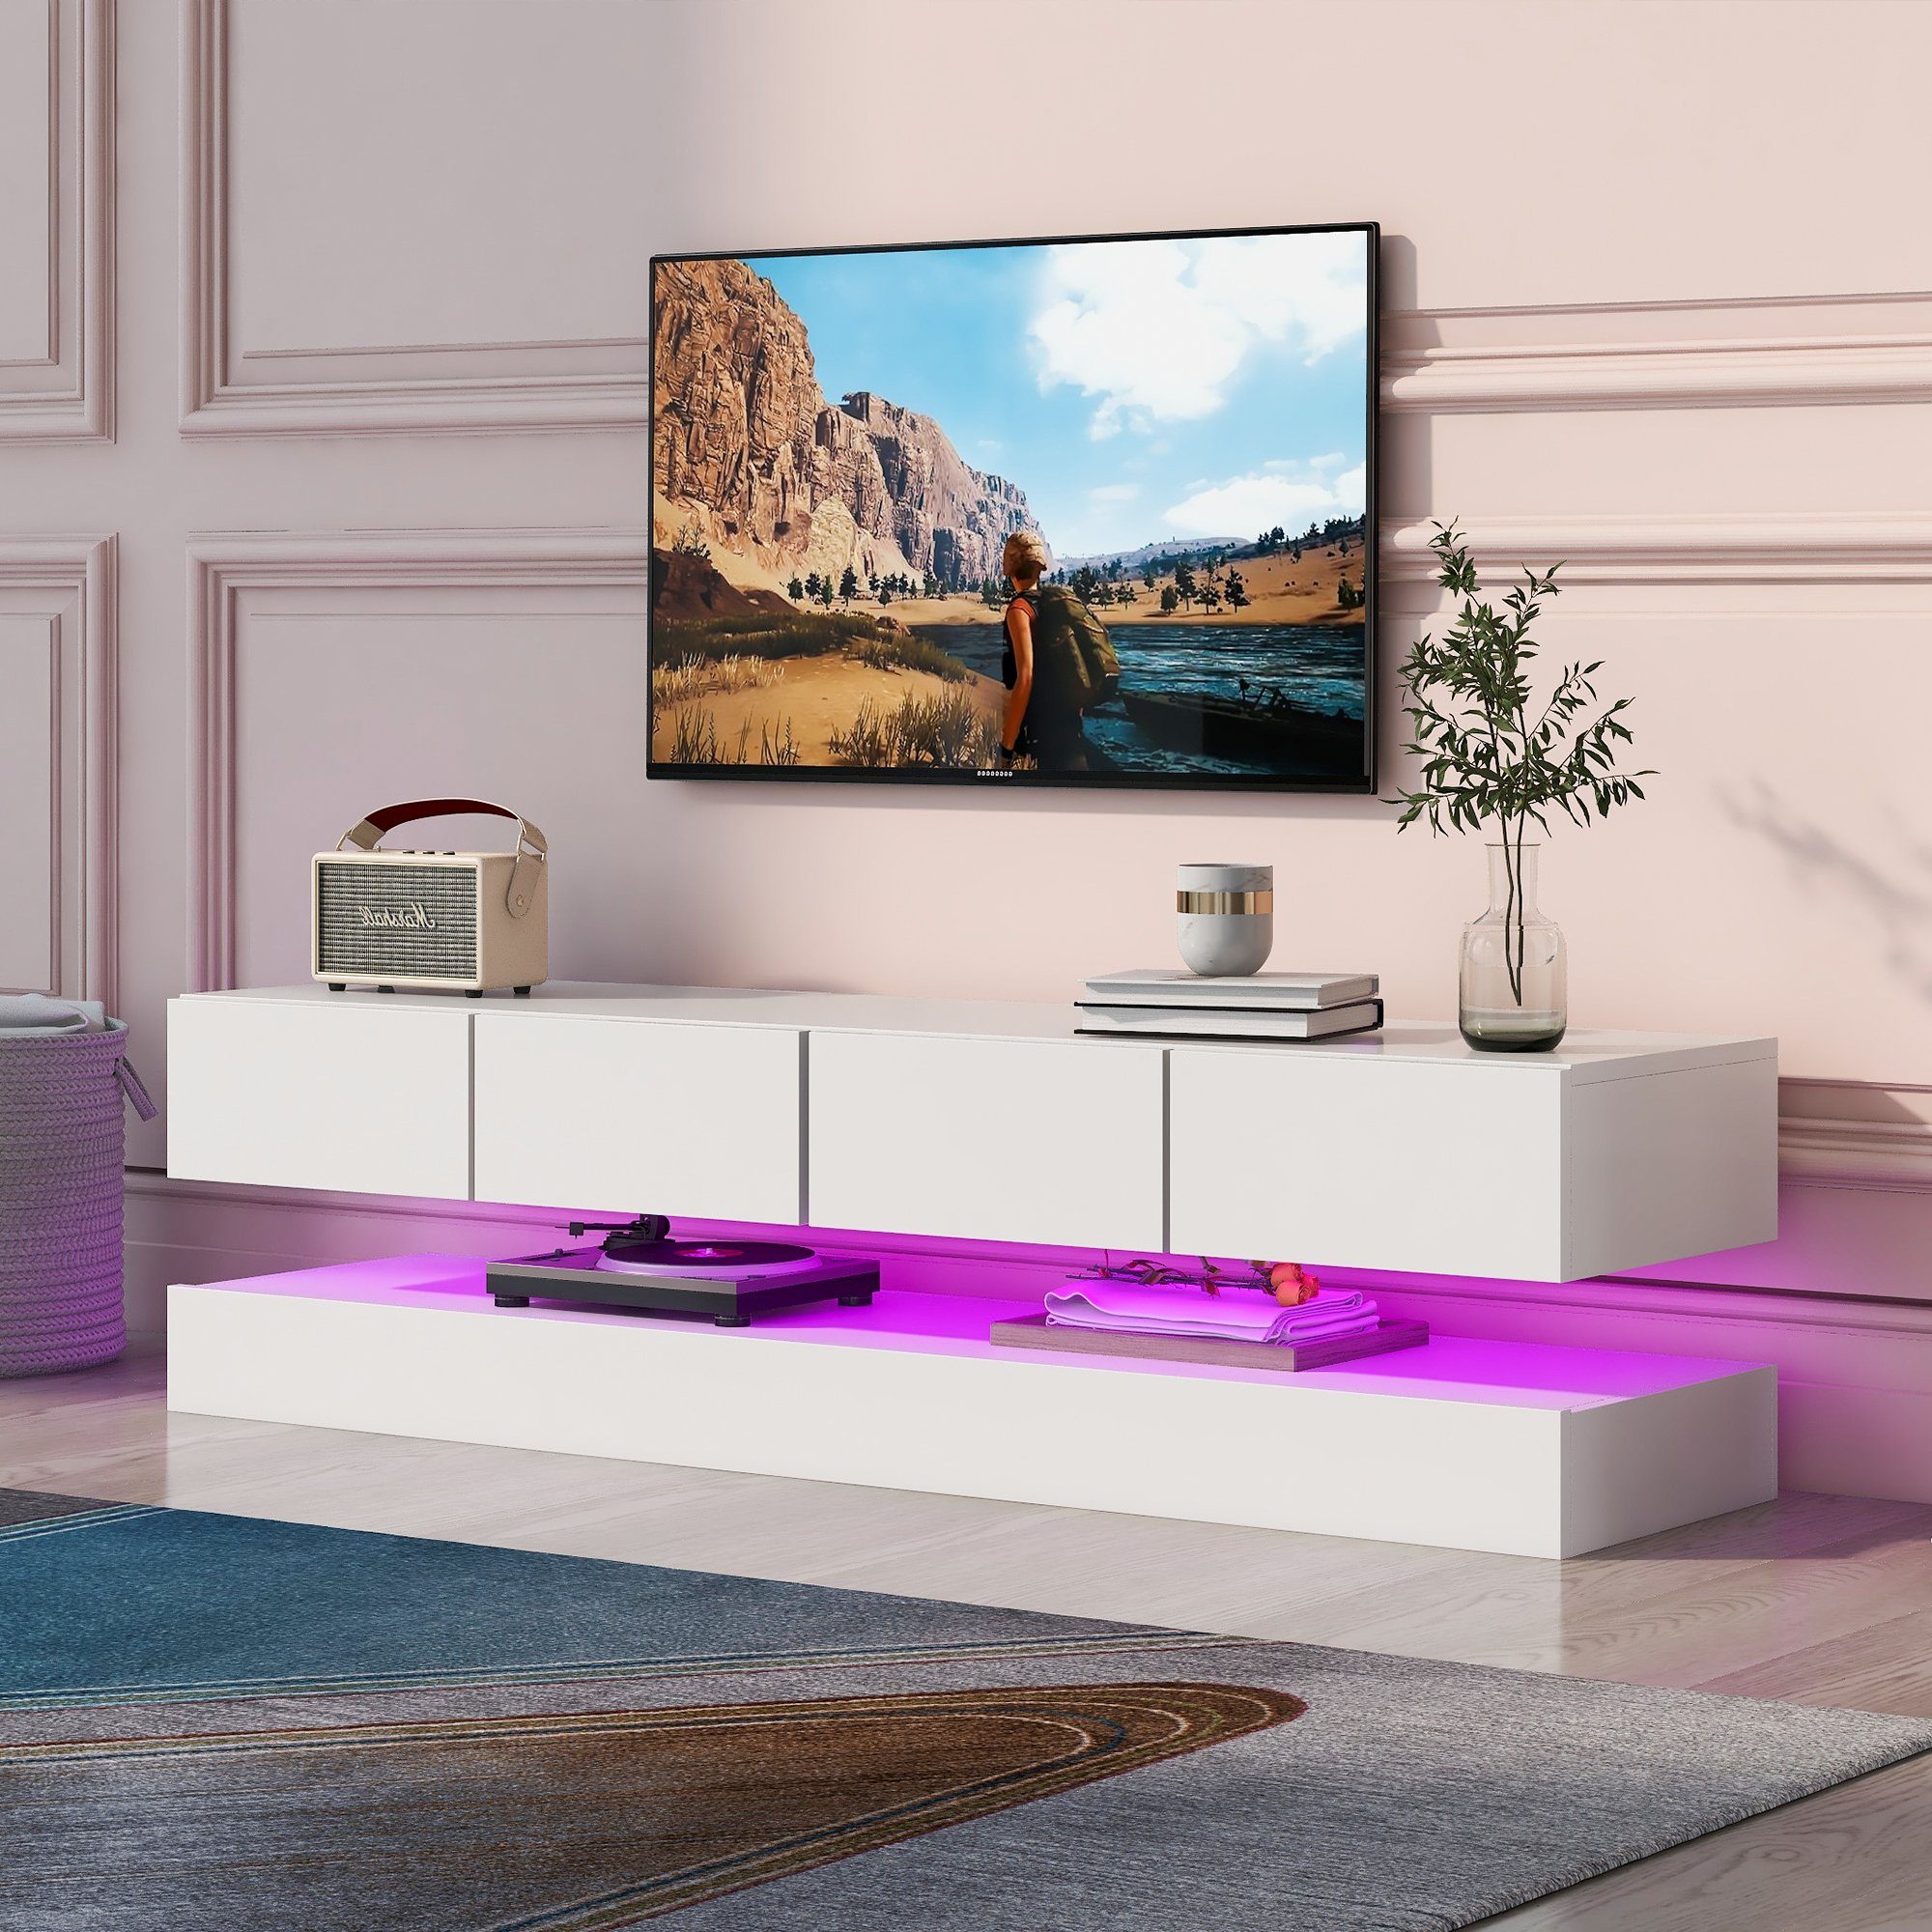 Sweiko Lowboard (wandmontierter TV-Lowboard mit offenem Fach und 4  Schubladen, TV-Schrank mit 16-farbiger LED-Beleuchtung und Fernbedienung),  weiß, 130*33*15cm